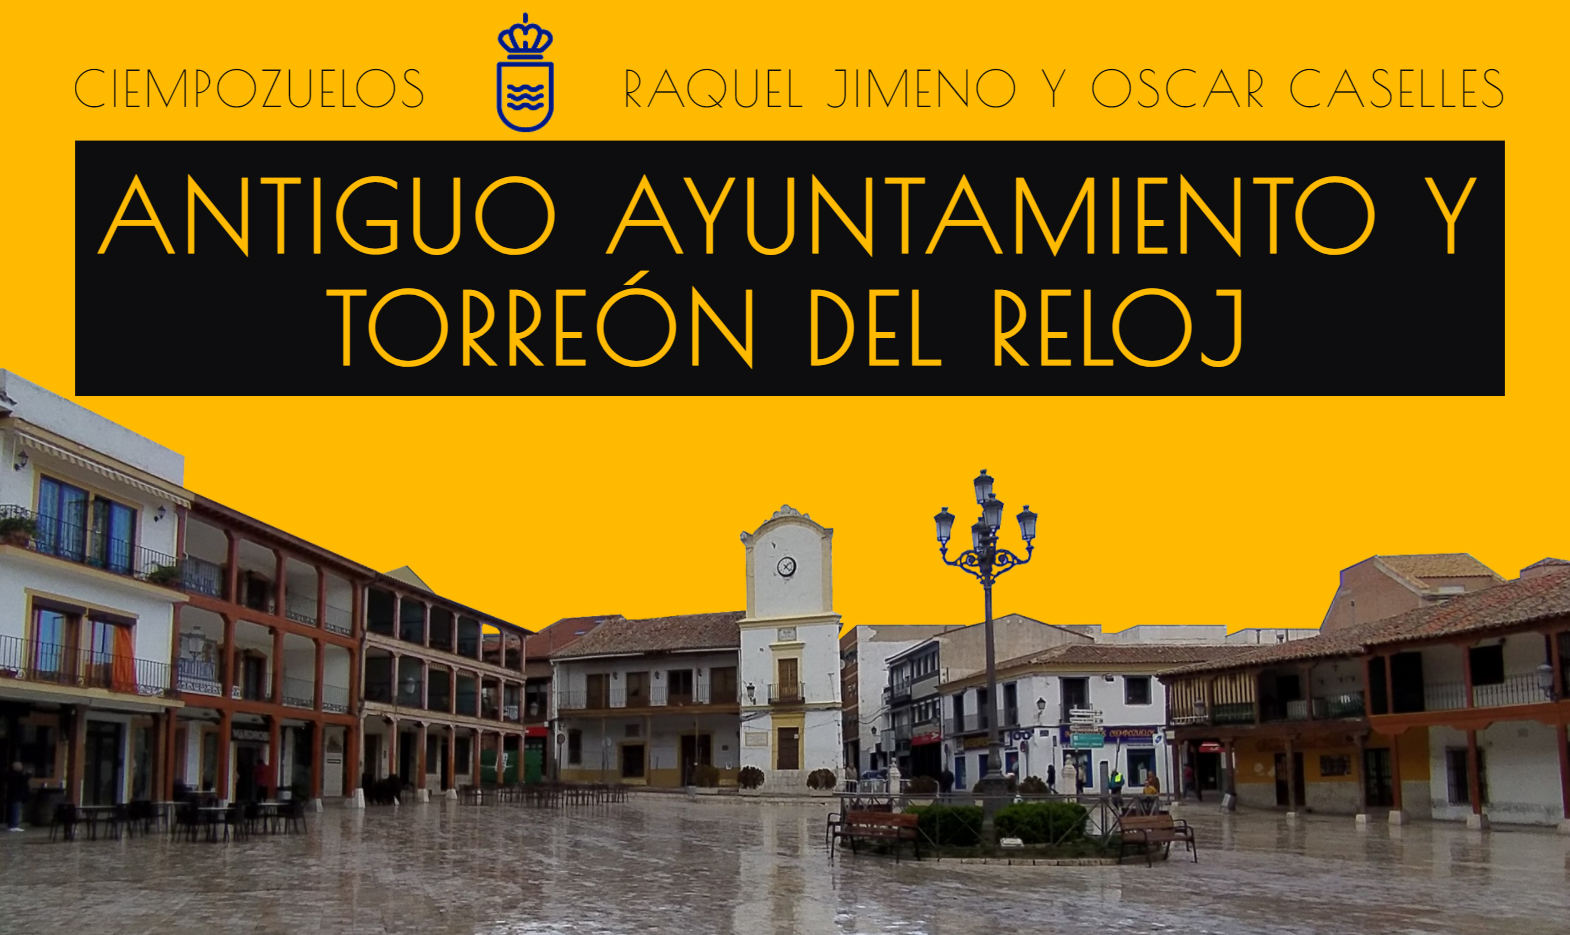 Proyecto de Rehabilitación del Antiguo Ayuntamiento y Torreón del Reloj